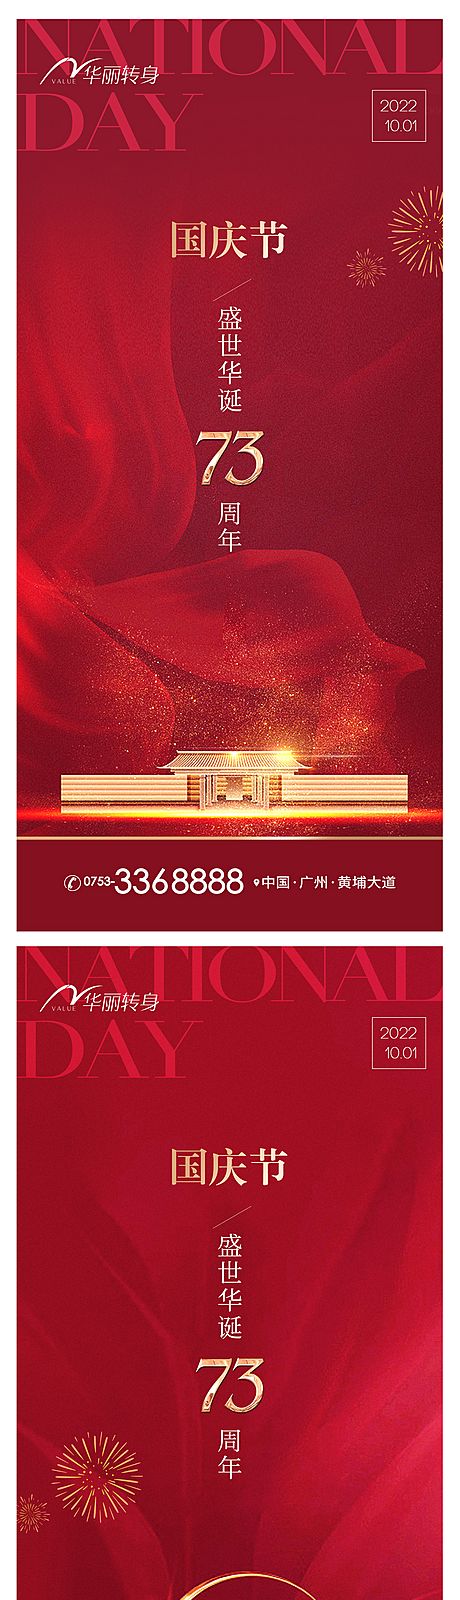 仙图网-国庆节海报